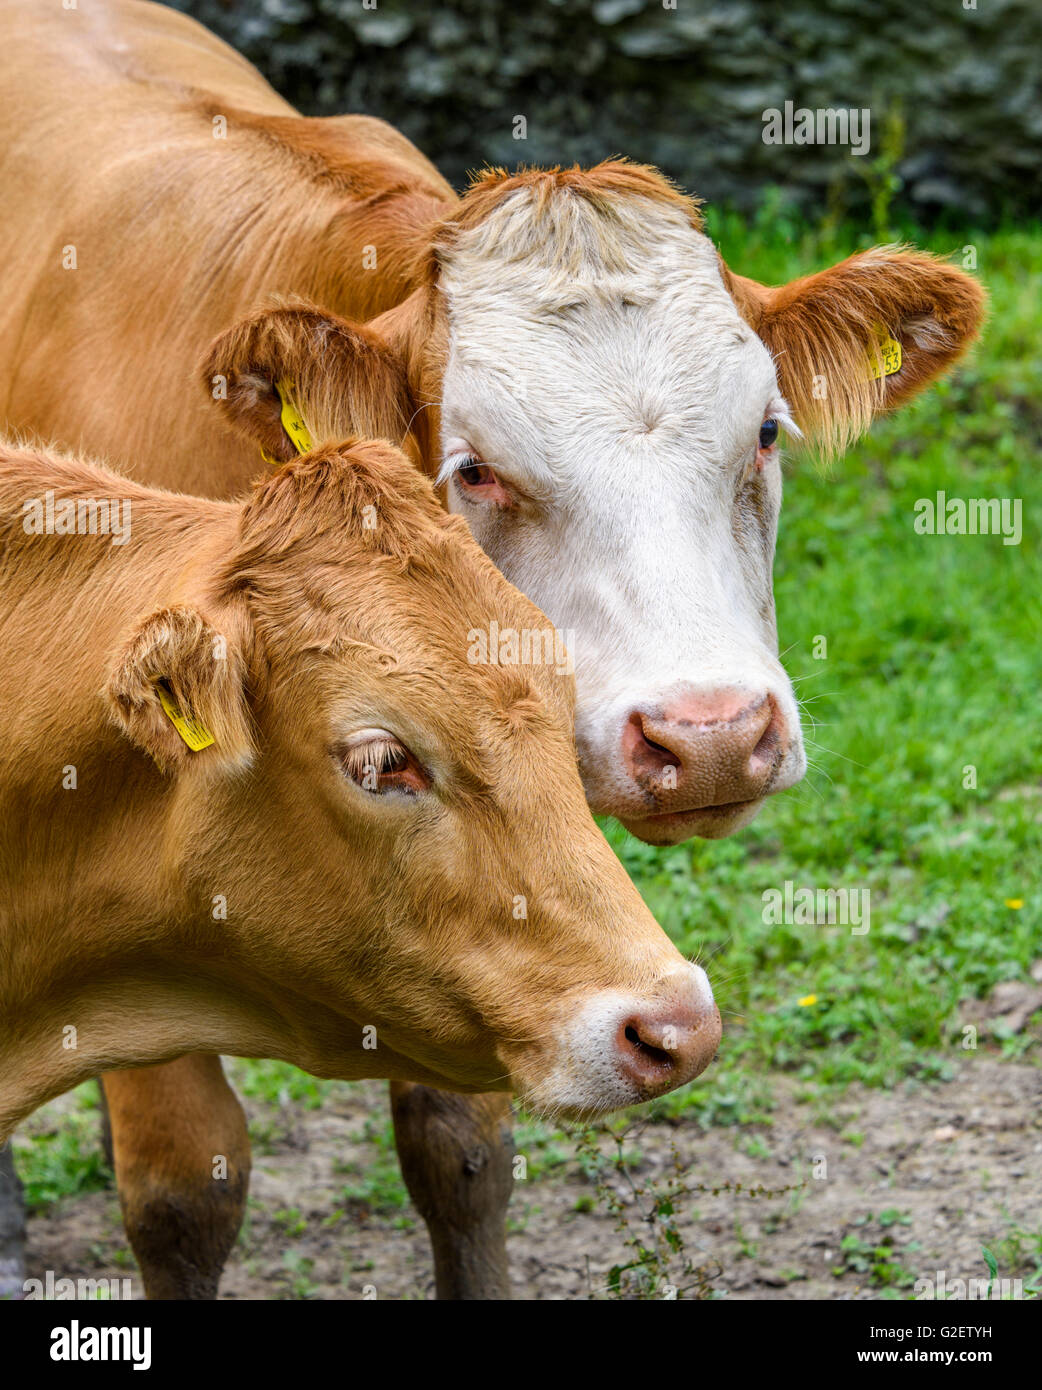 Close-up de deux têtes de vache (un brun et un brown & white) que leur attention est pris par quelque chose à proximité. Banque D'Images